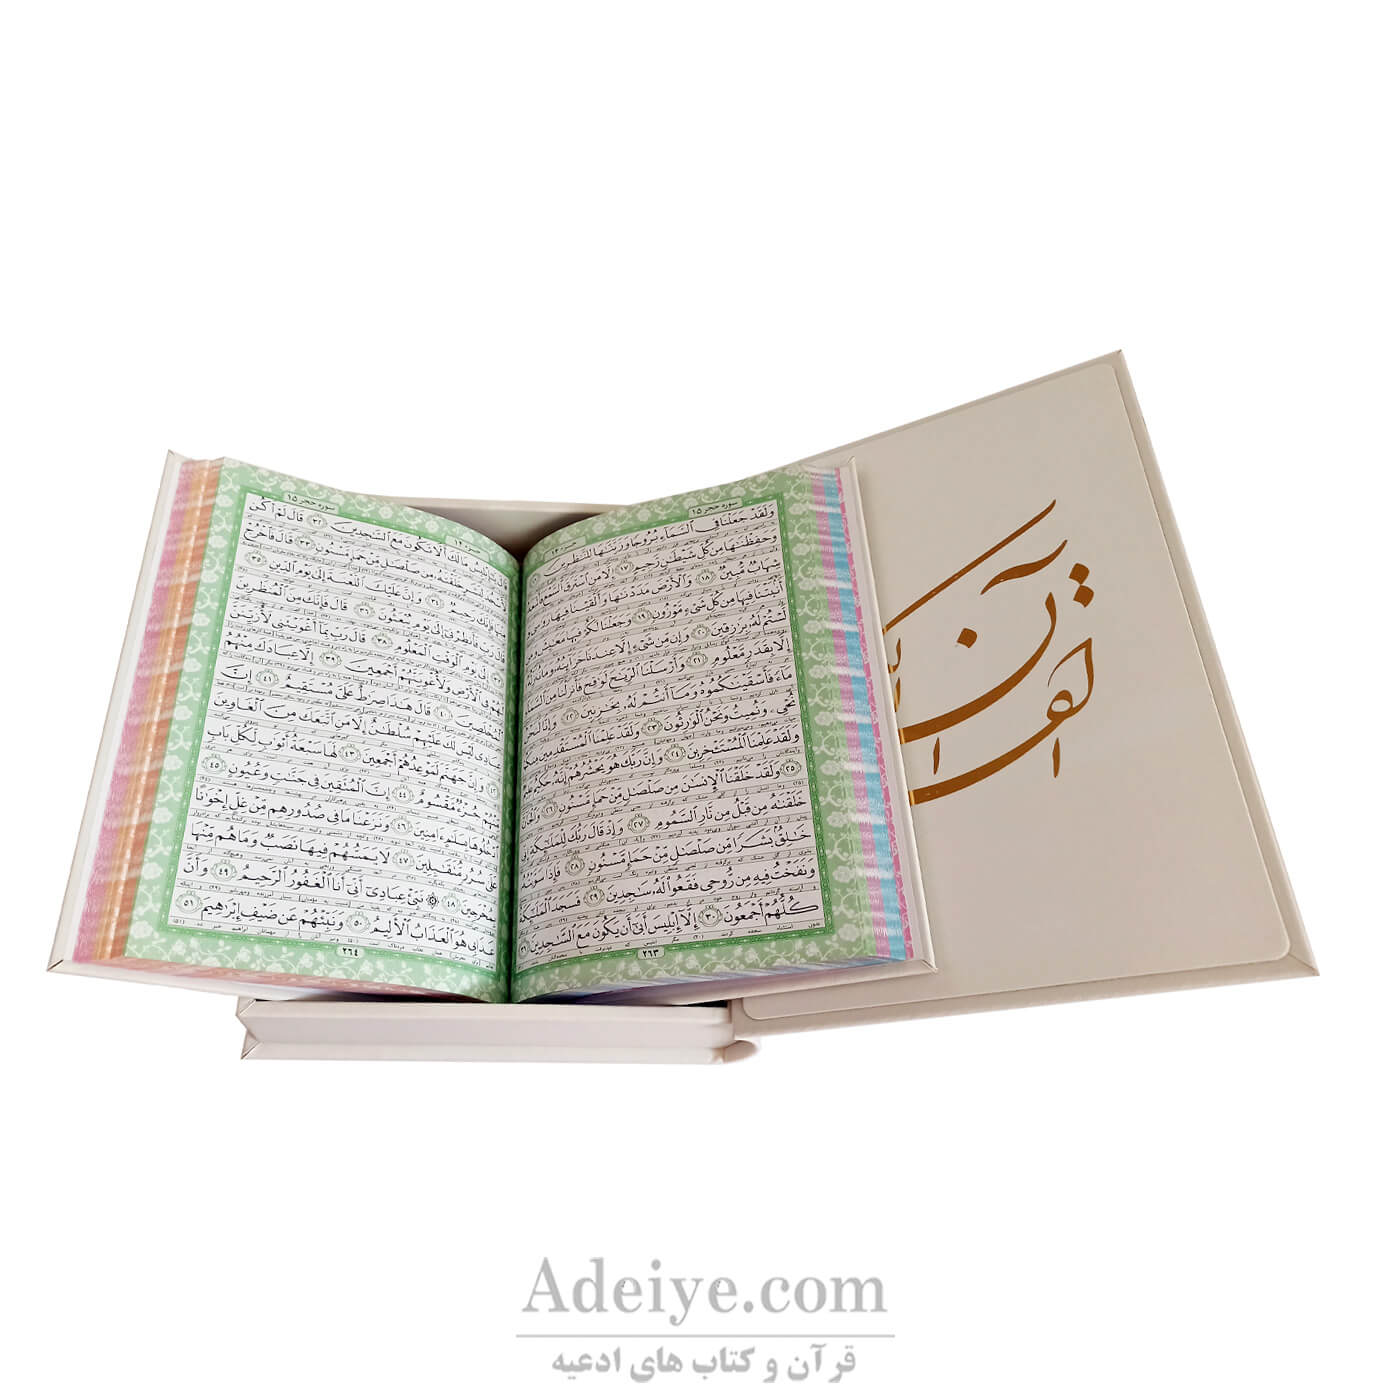 قرآن عثمان طه قابدار جعبه ای برجسته سلفون سخت مولتی دار طلاکوب- صفحات رنگی